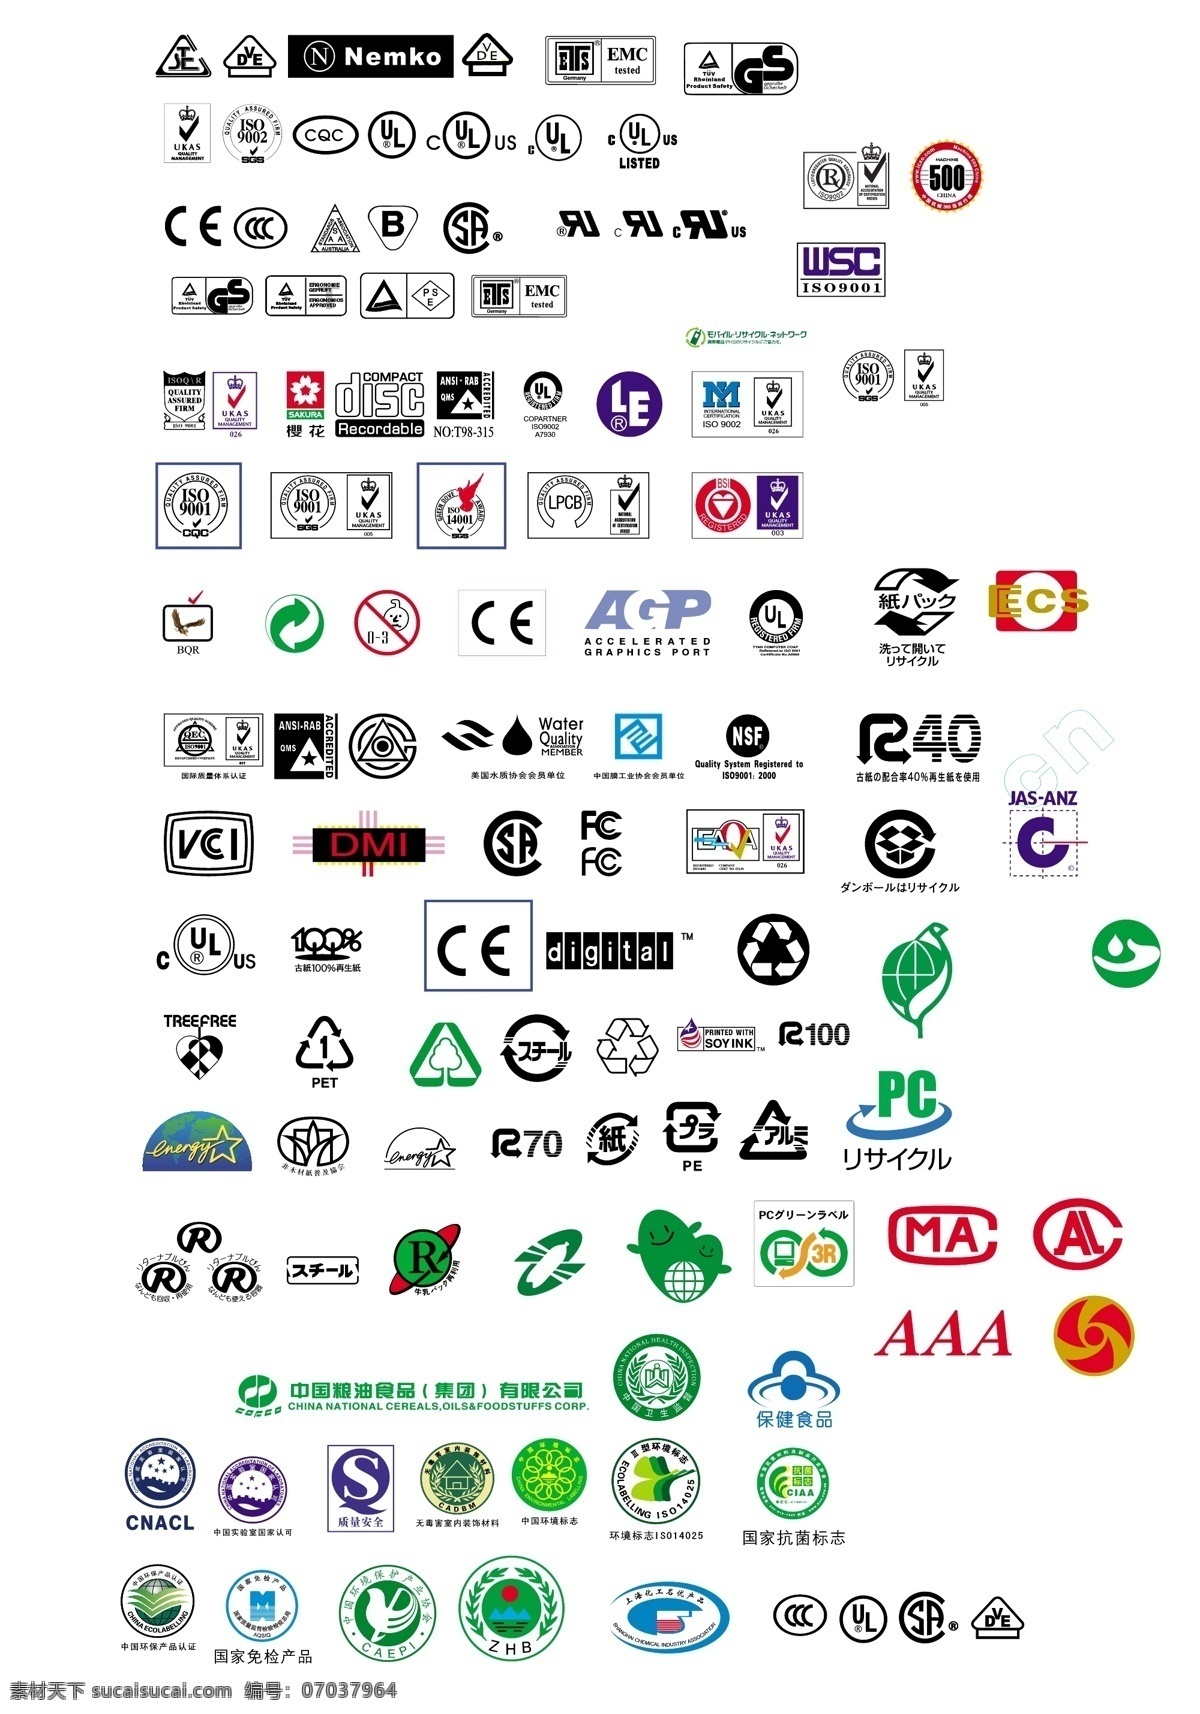 各类认证标志 认证标志 认证logo 各类认证 认证